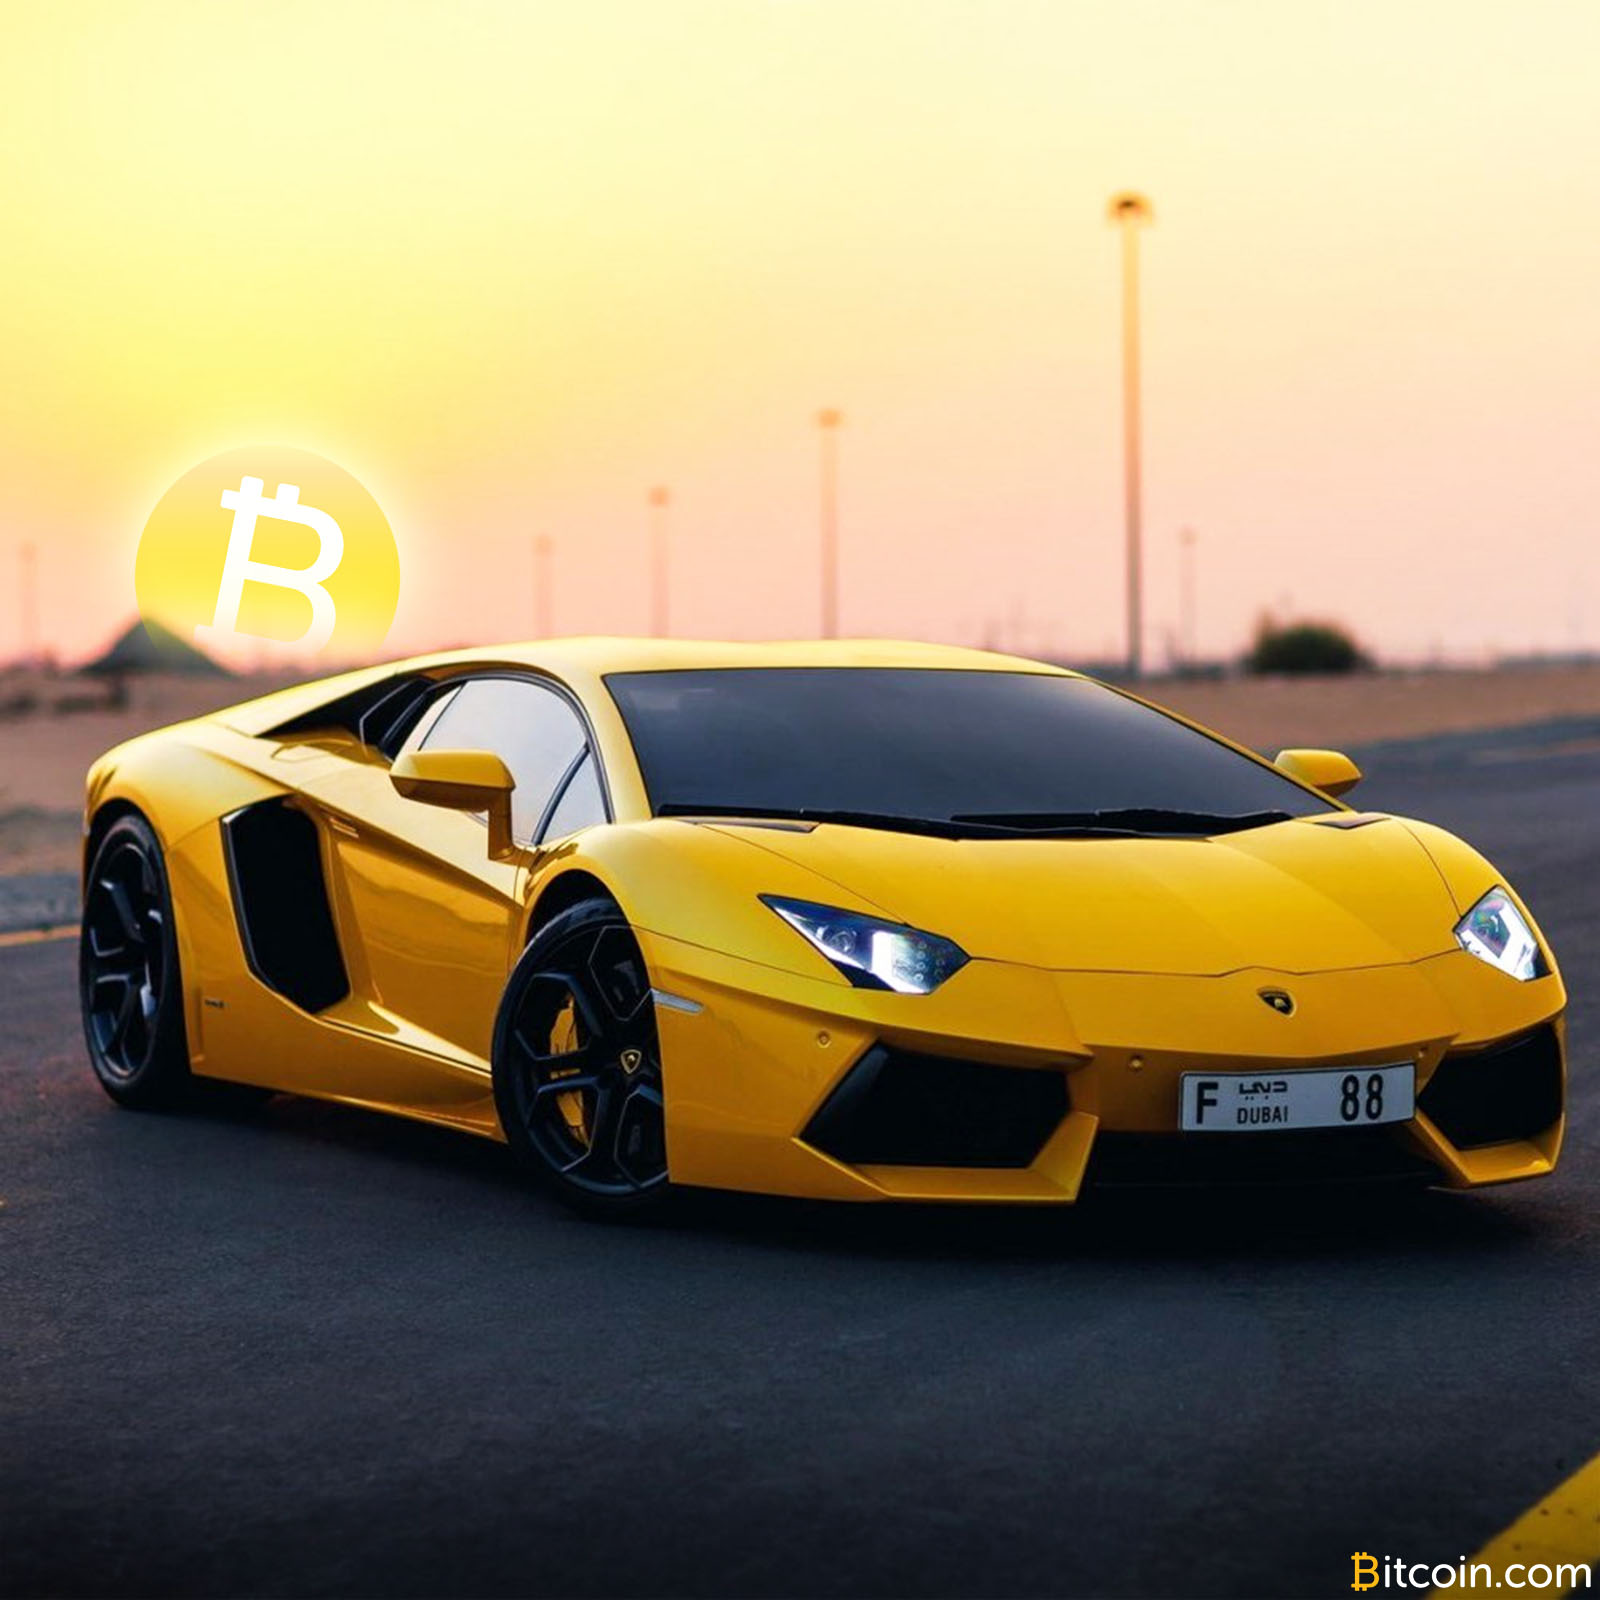 Lux cumpărat cu Bitcoin – “When lambo?”